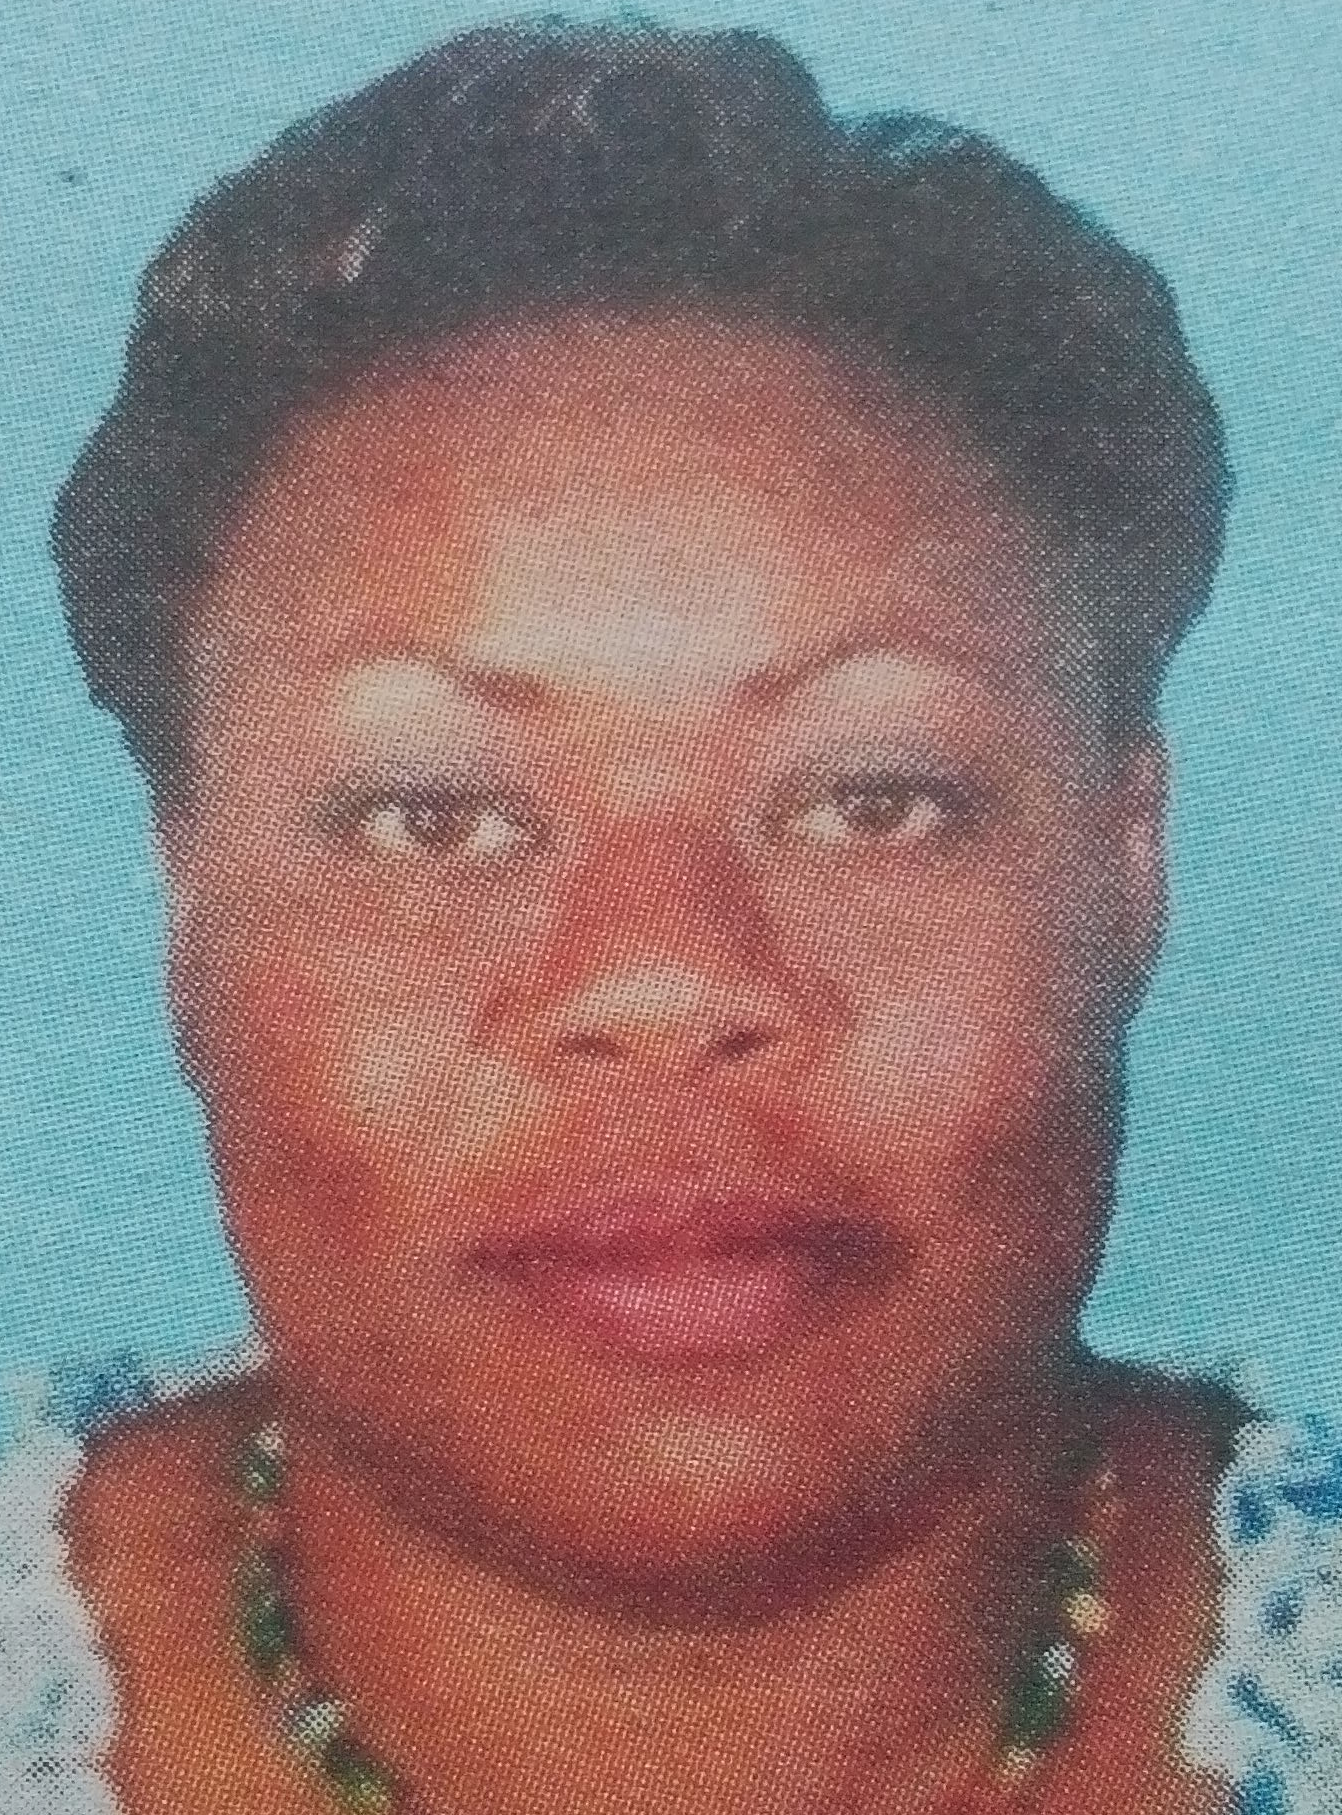 Obituary Image of Caroline Nakhumicha Muyumbu